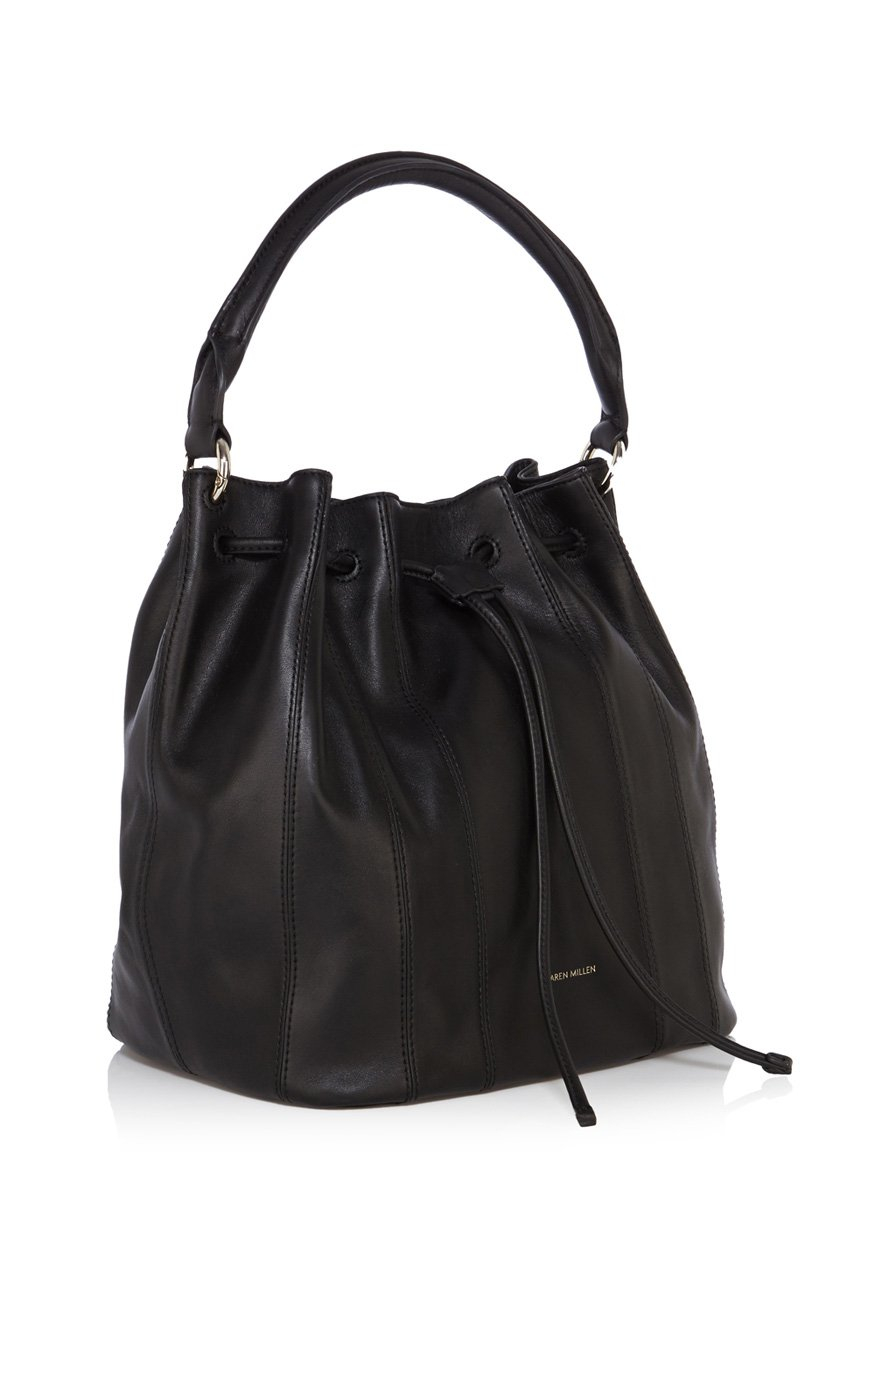 Lyst - Karen Millen Duffle Bag in Black